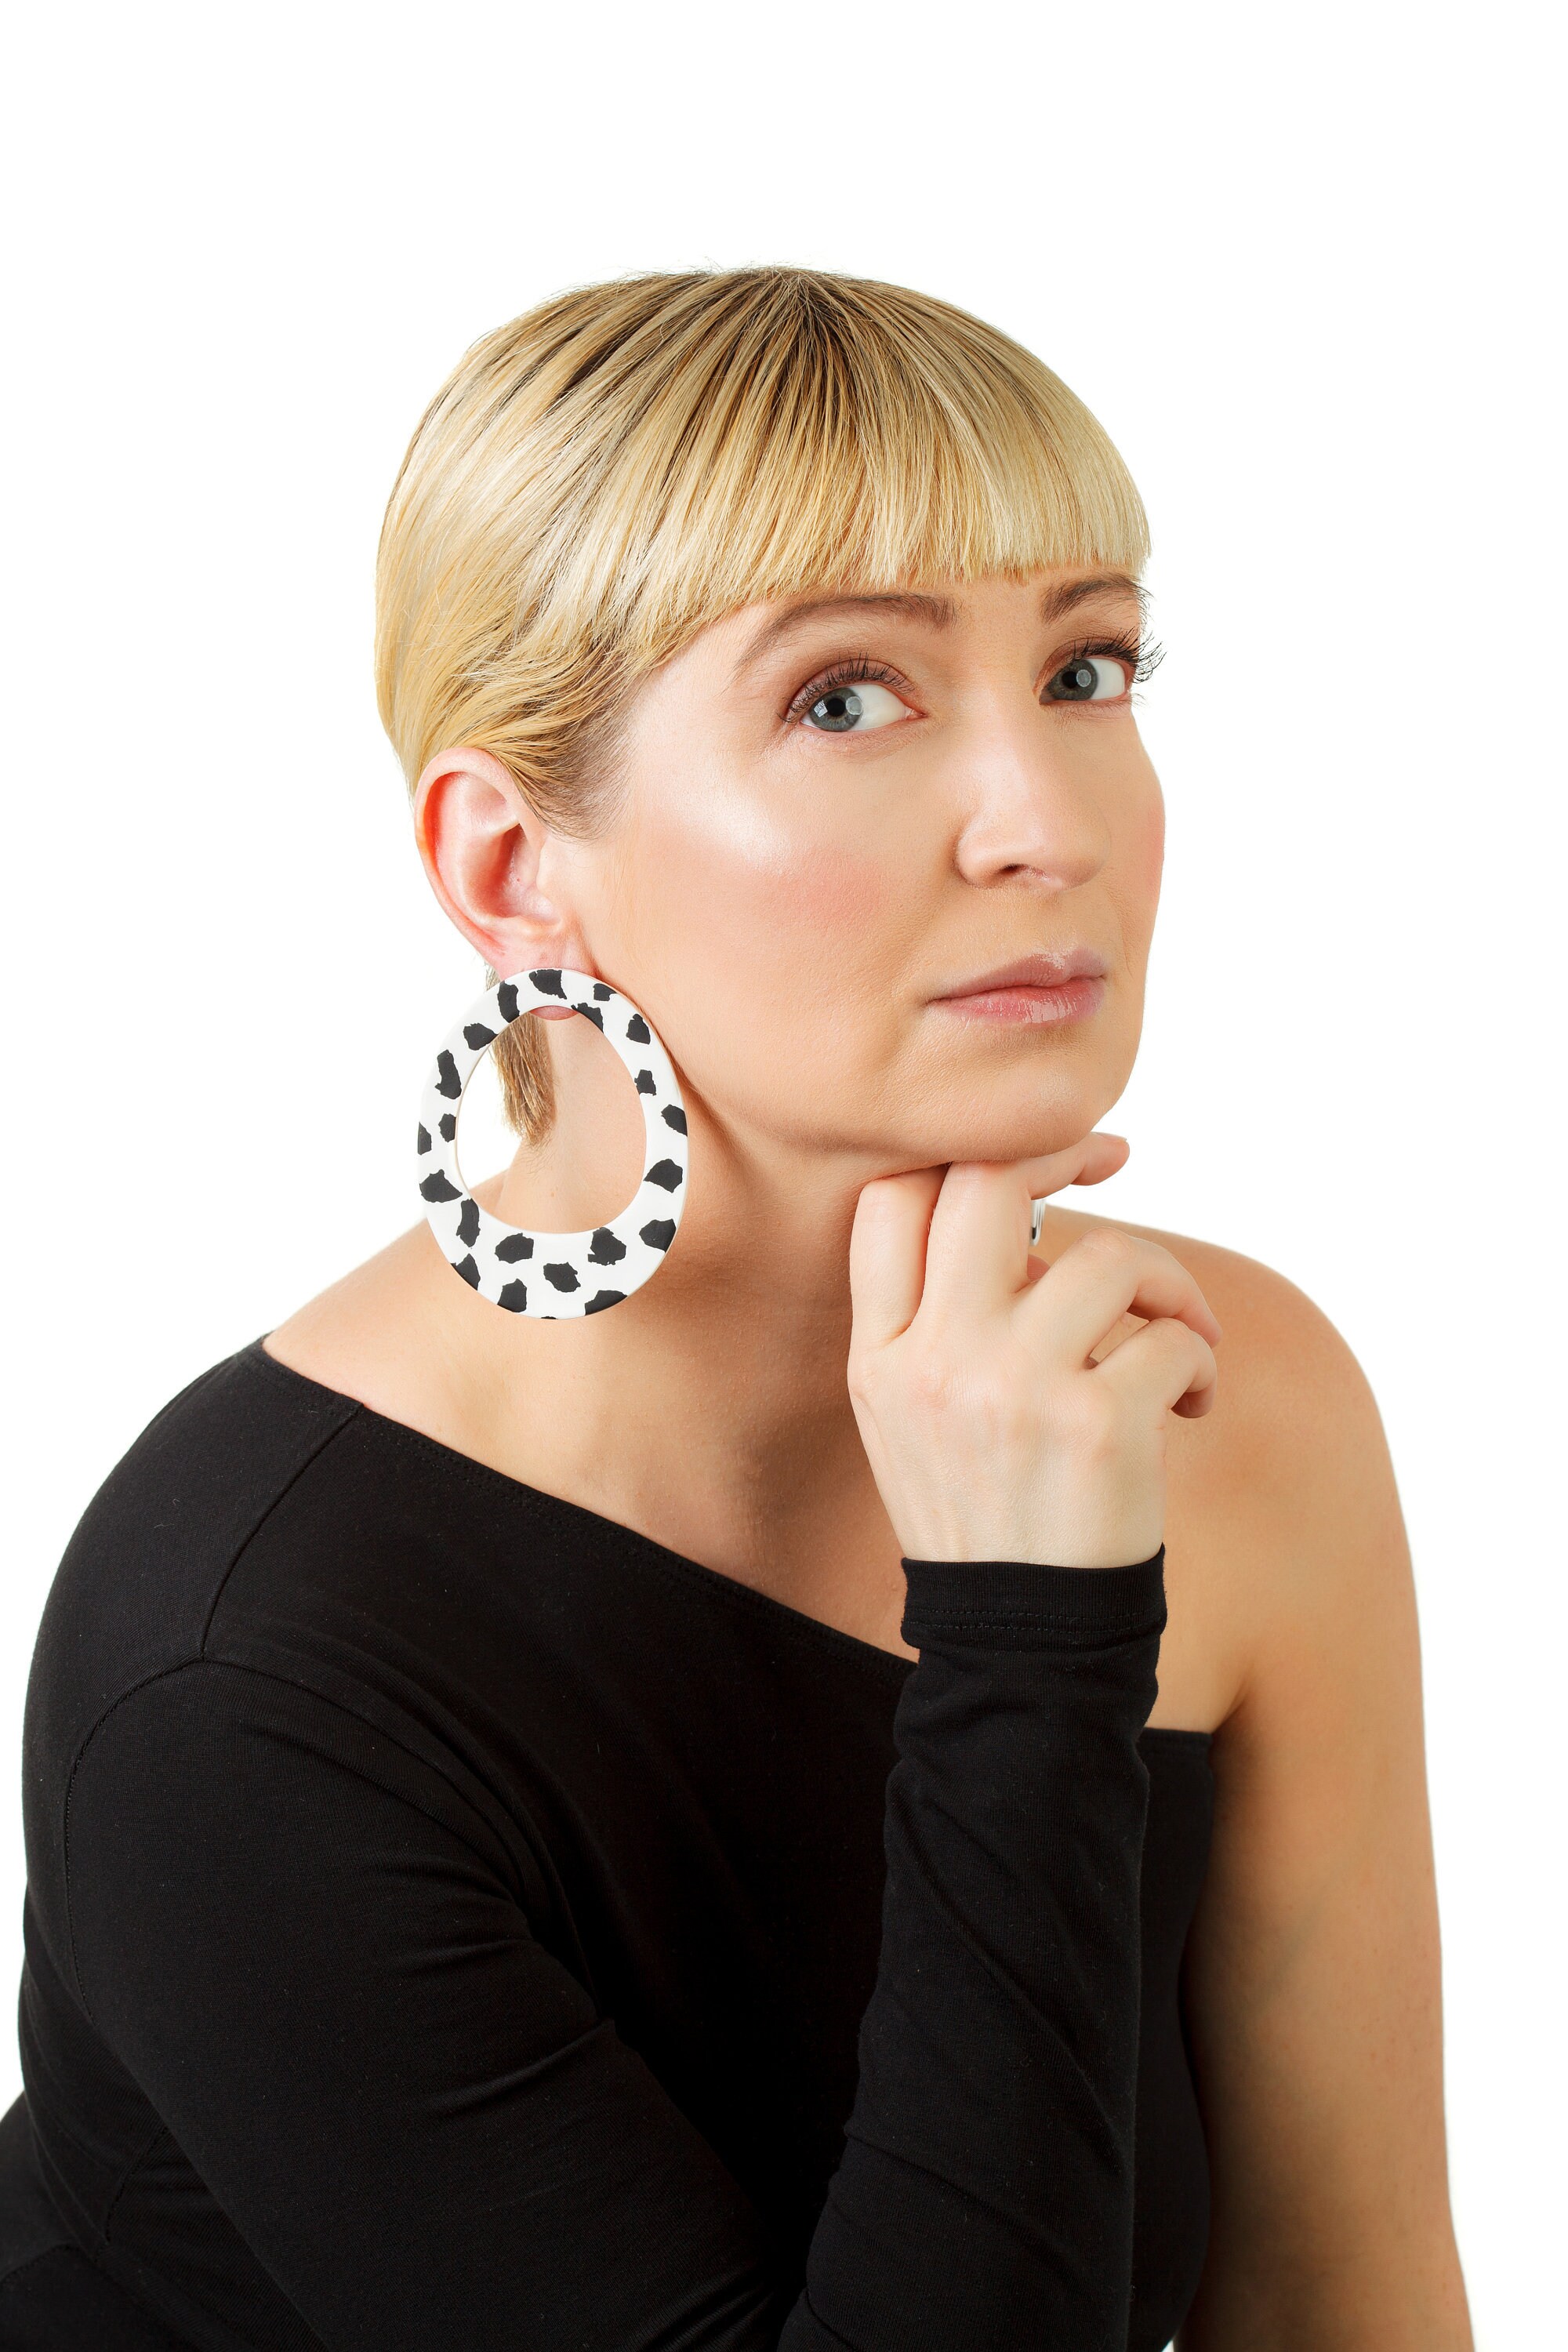 Buy Big Hoop Black  White Statement Earrings Minimalist Online in India   Etsy